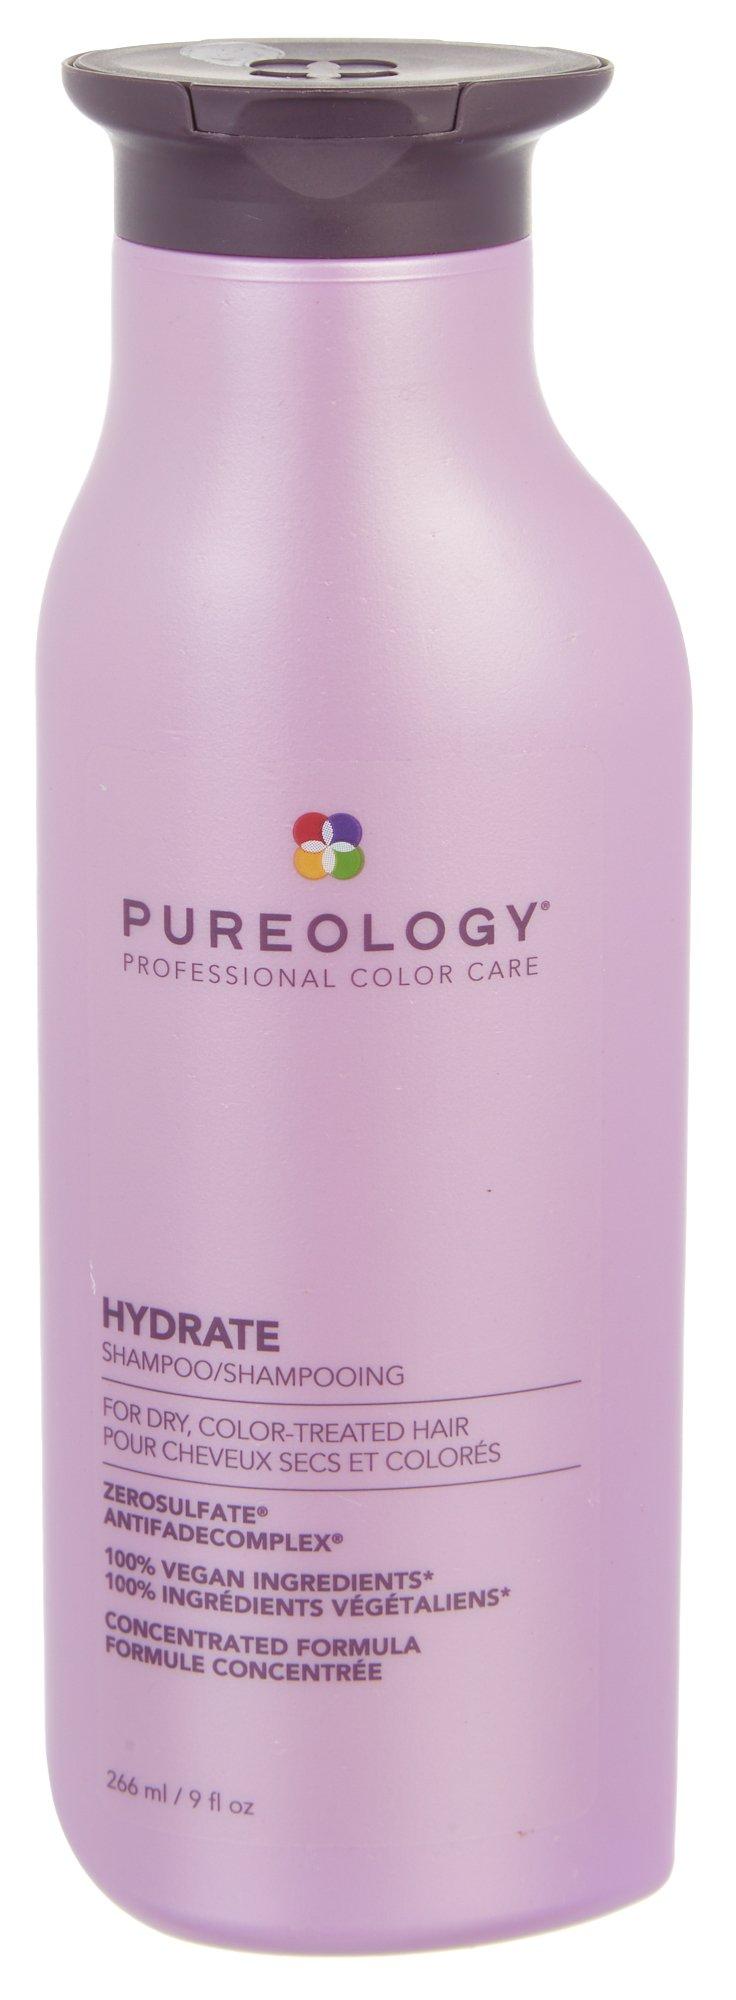 Pro Color Care Hydrate Shampoo 9.0 Fl.Oz.